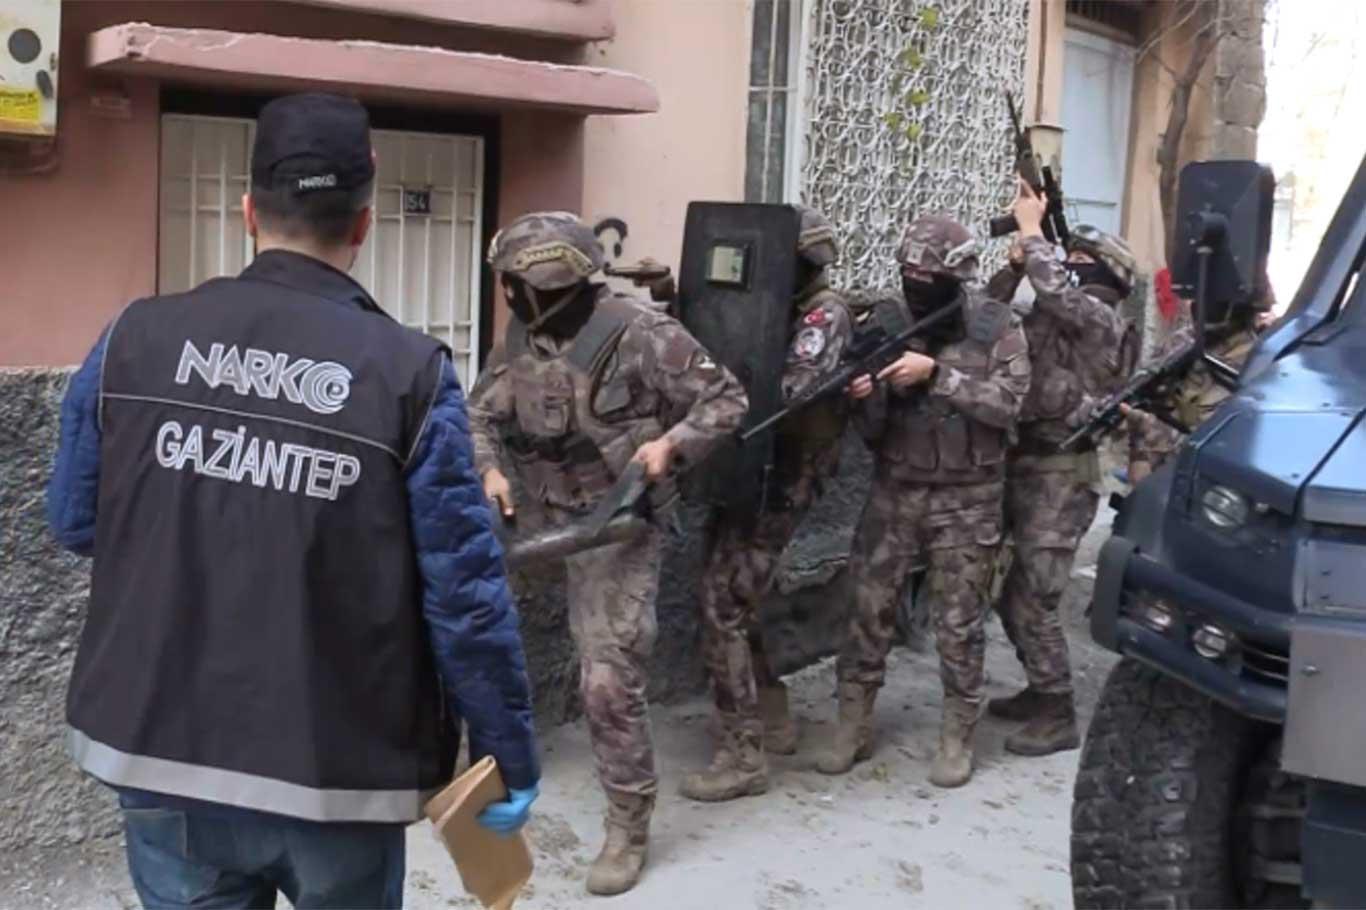 Gaziantep'te uyuşturucu satıcılarına operasyon: 28 gözaltı